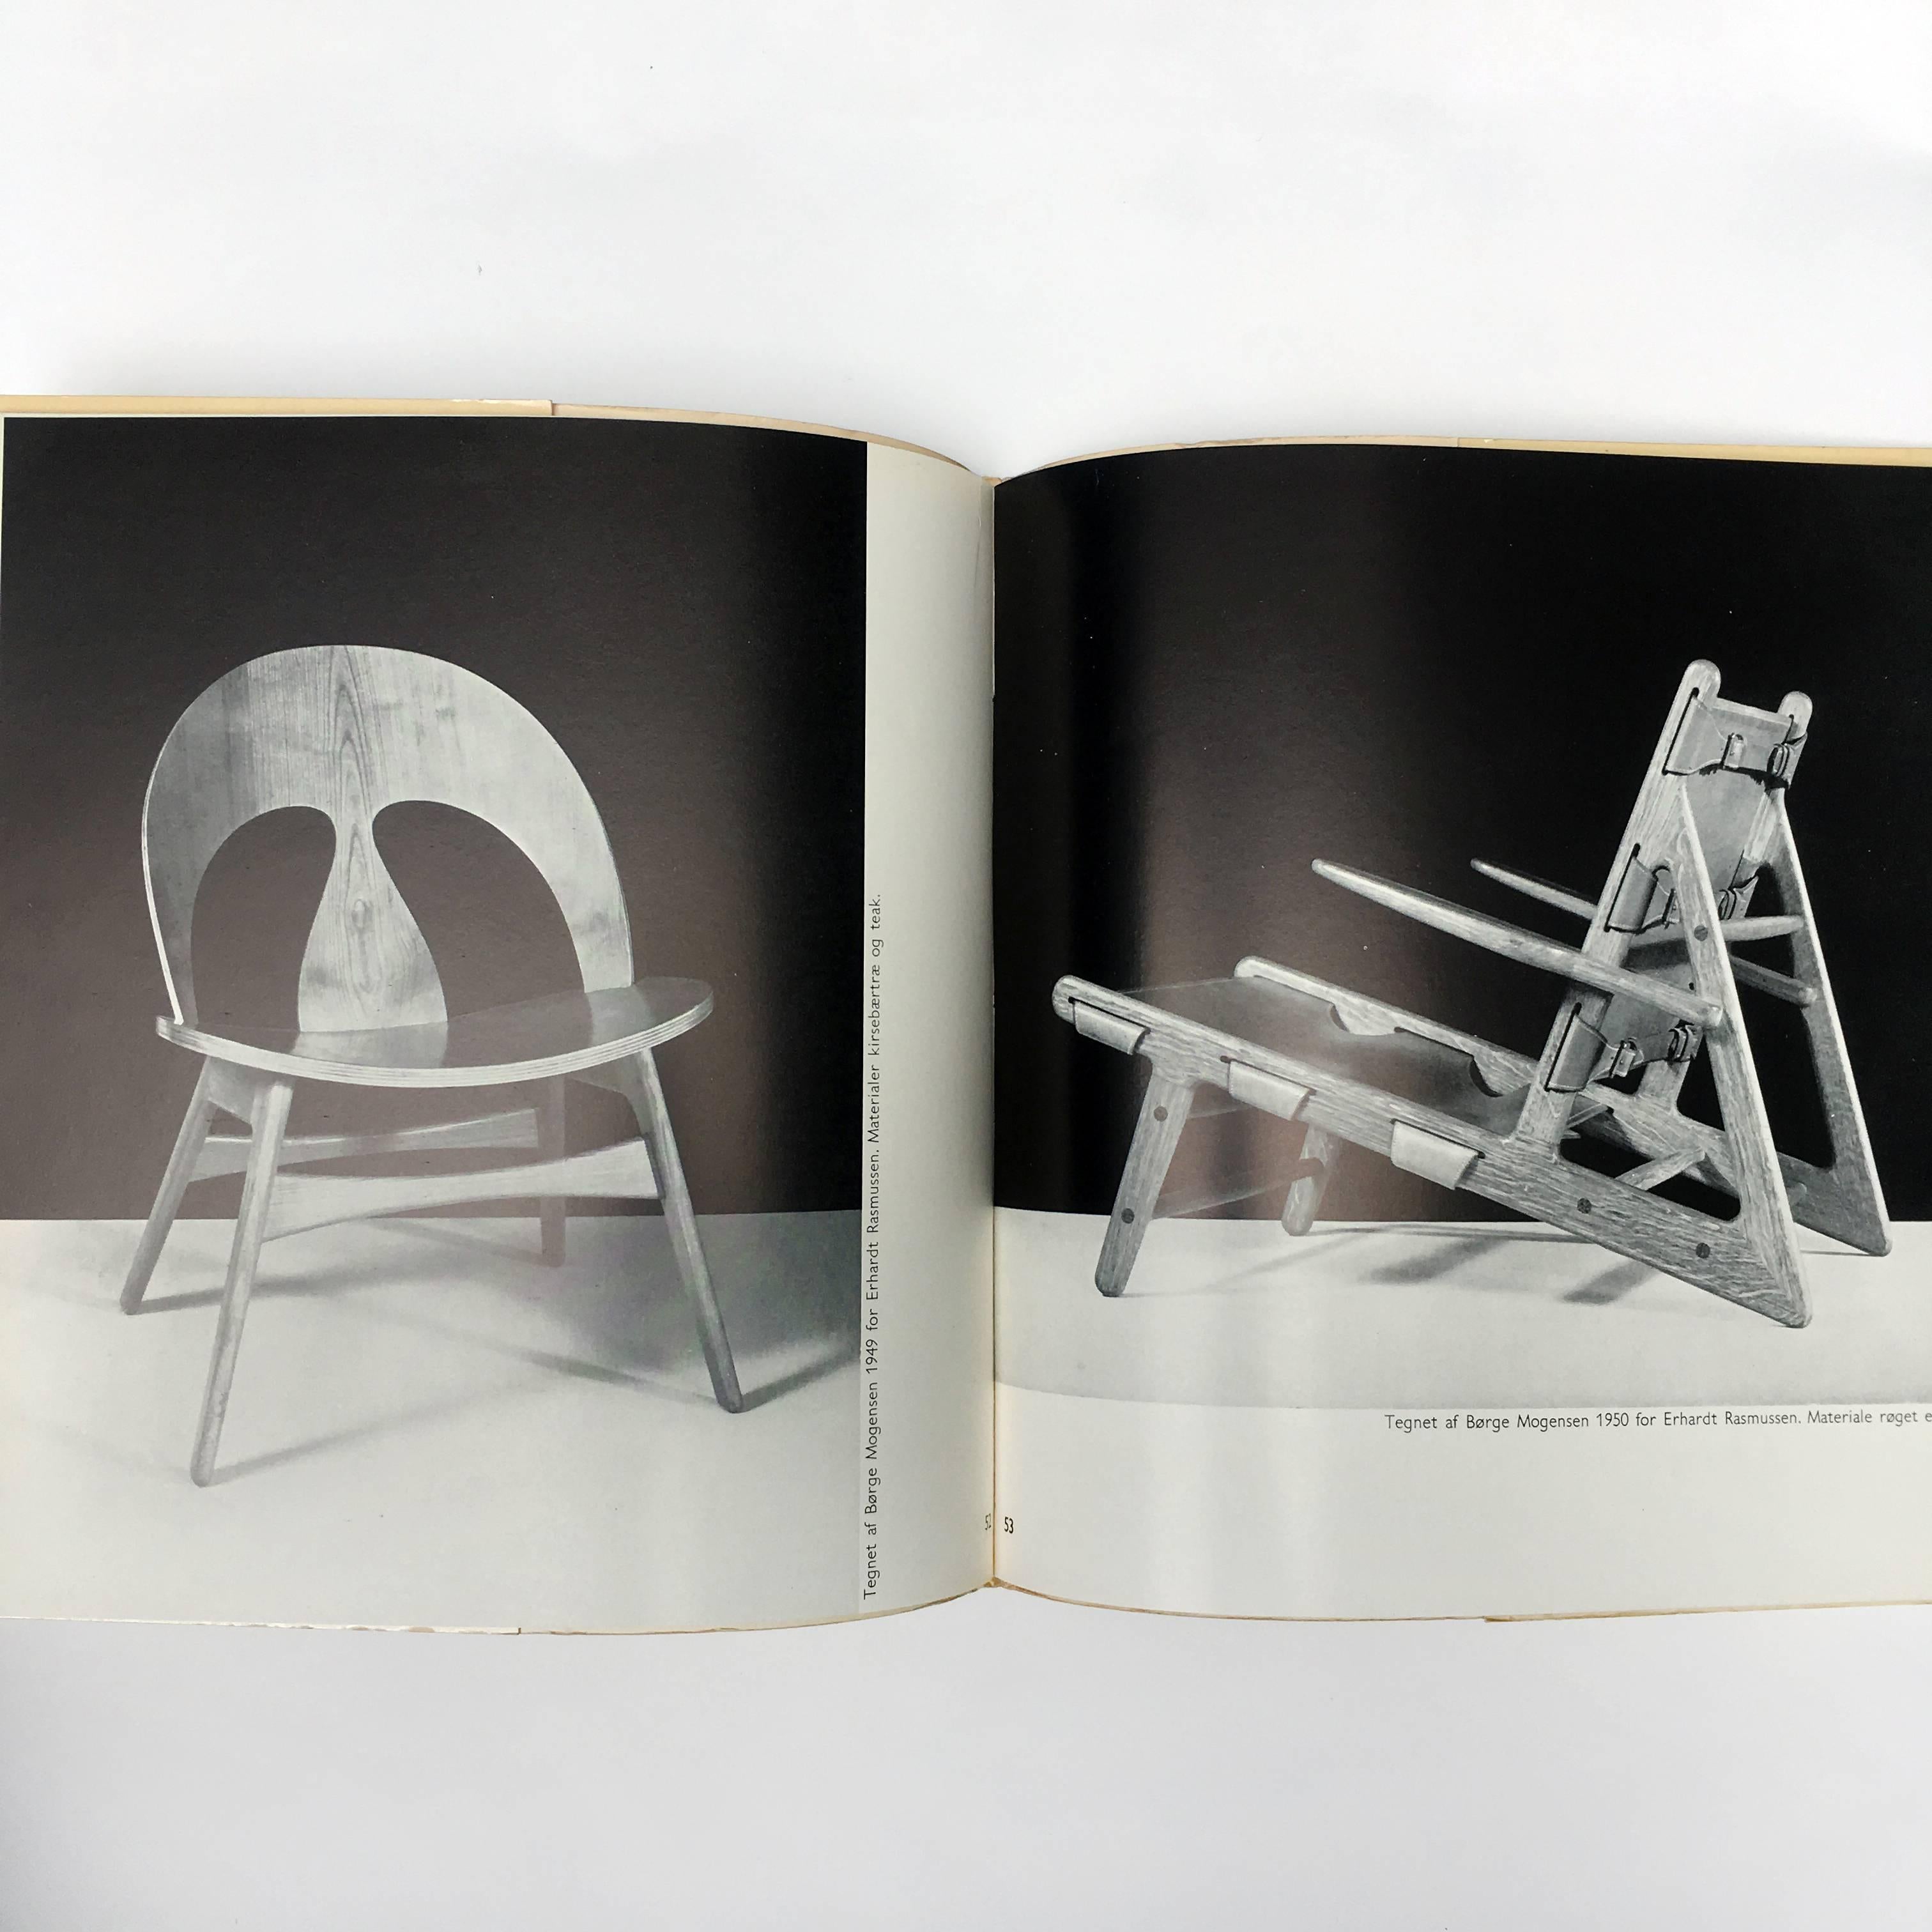 Première édition, publiée par Høst & Søns Forlag København, 1954

Un document important sur le design des chaises danoises au début des années 1950, montrant de nombreux développements esthétiques et technologiques provenant du Danemark à cette